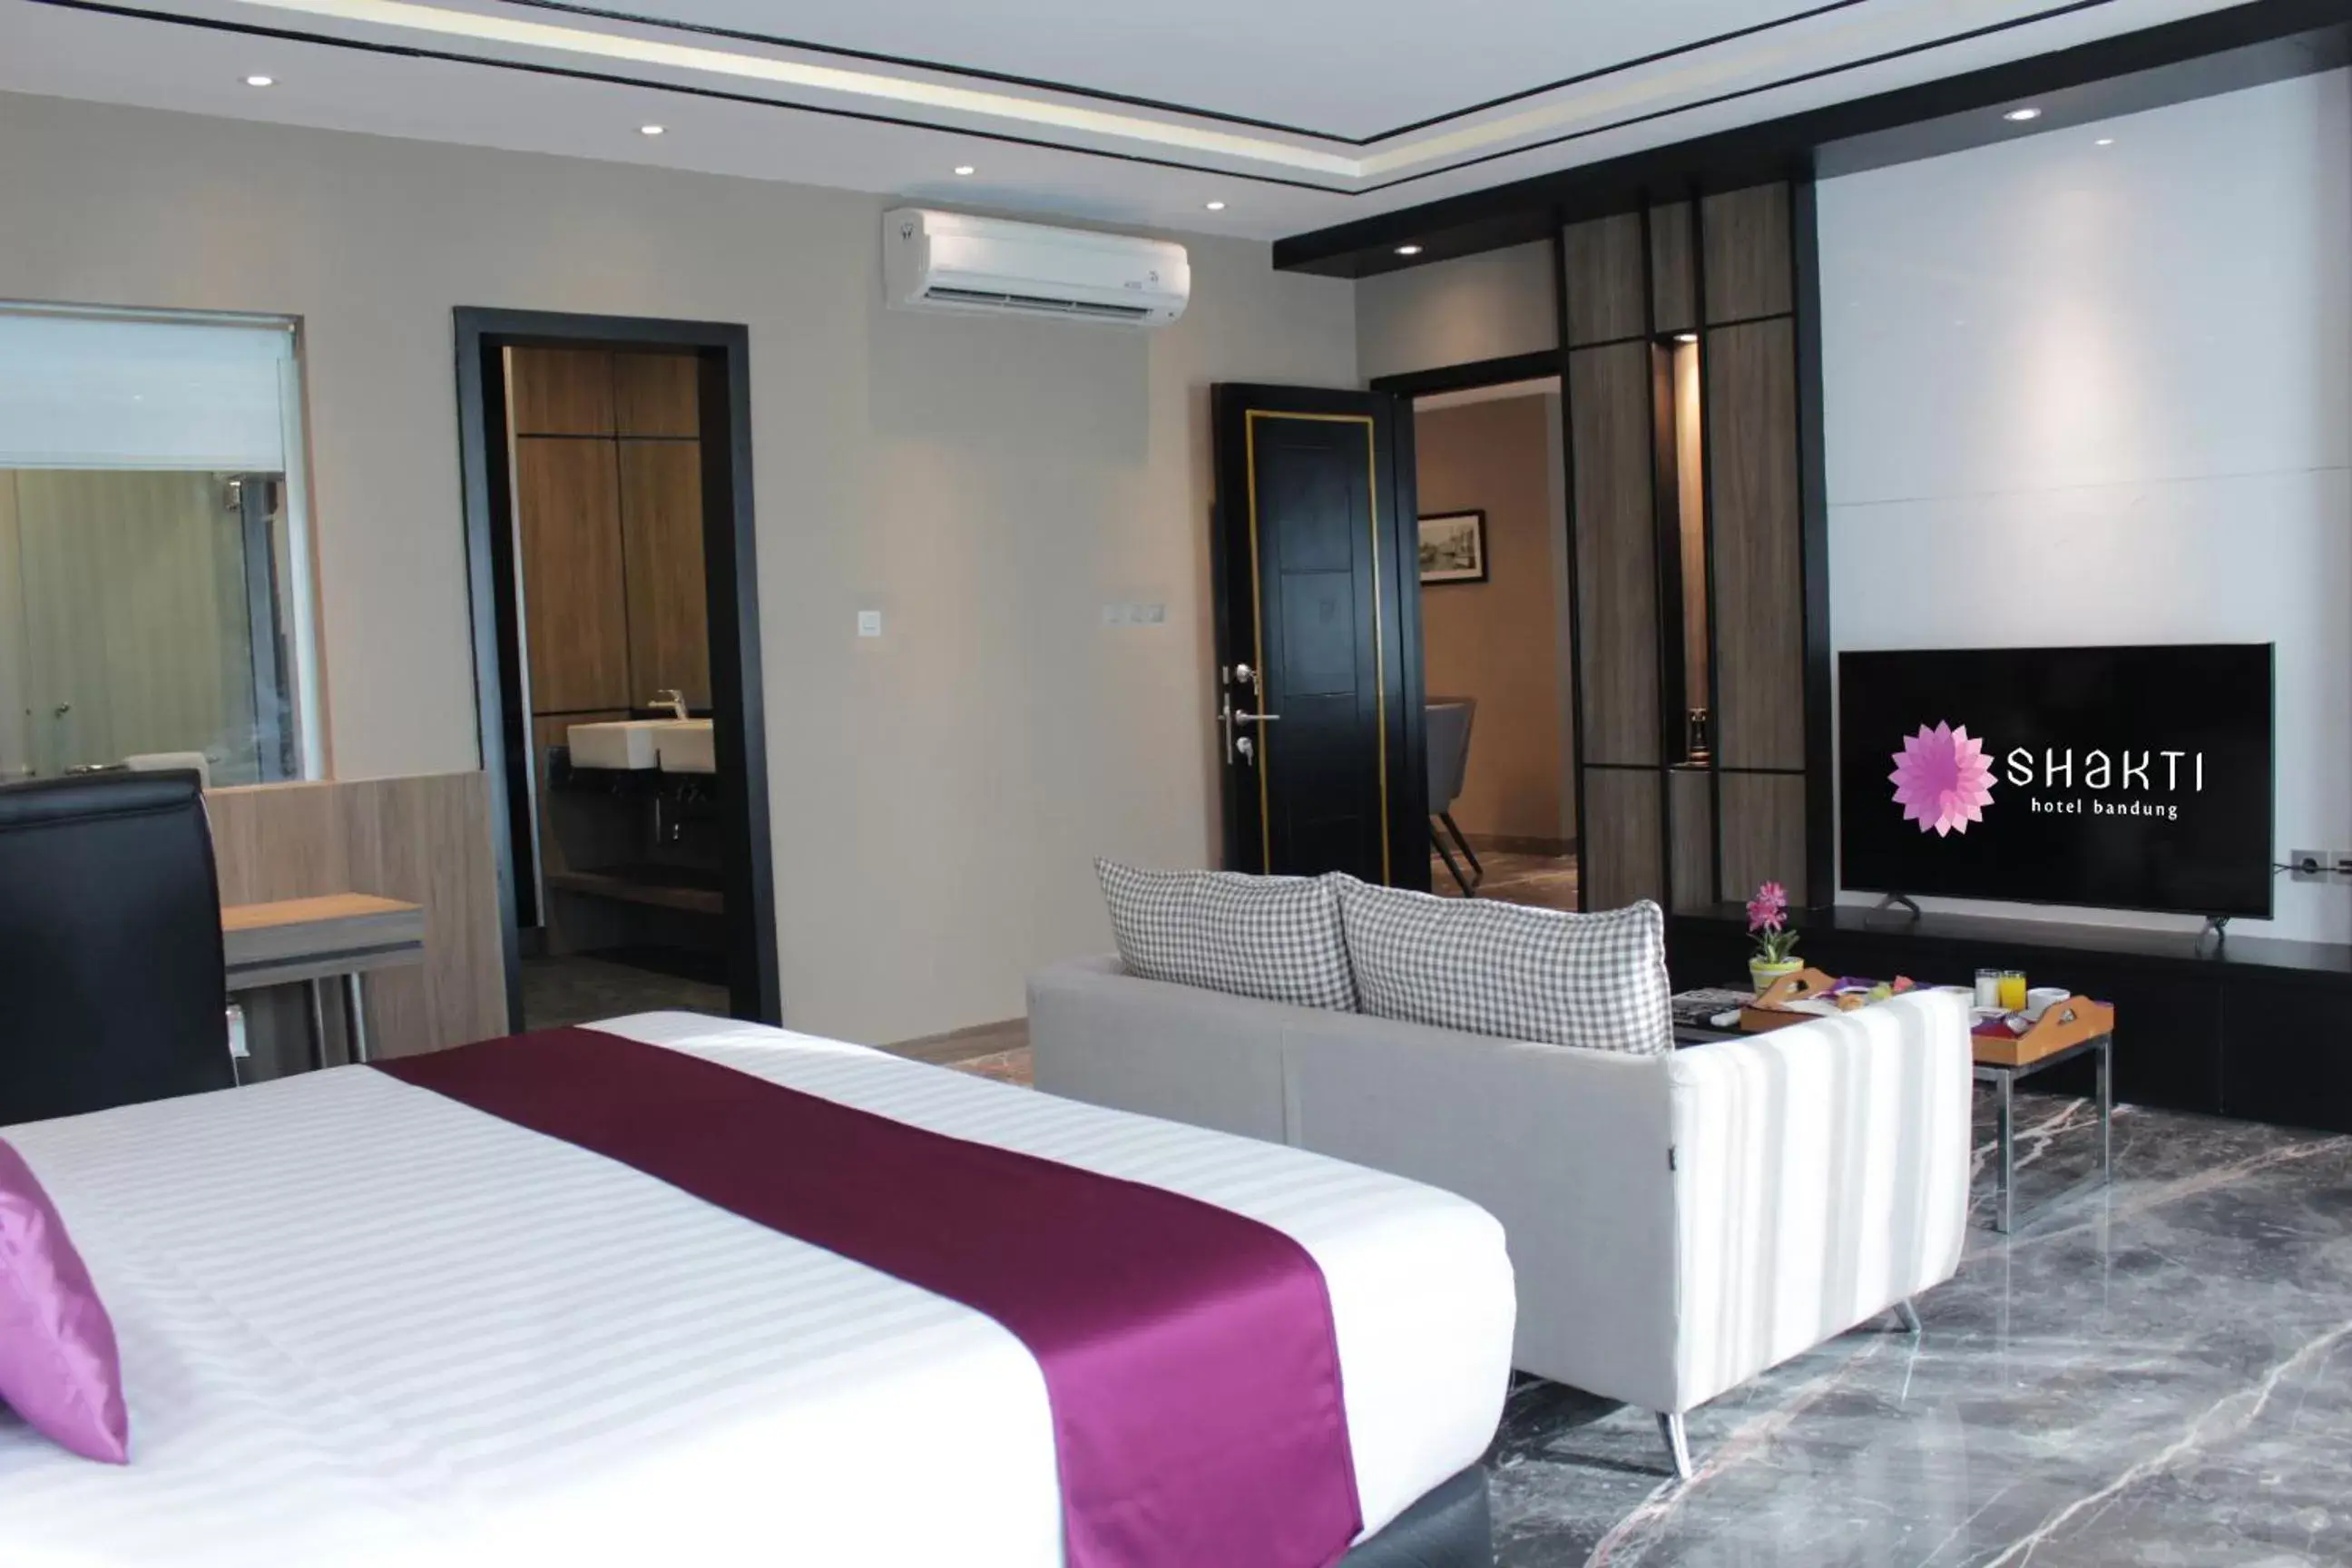 Bedroom in Shakti Hotel Bandung